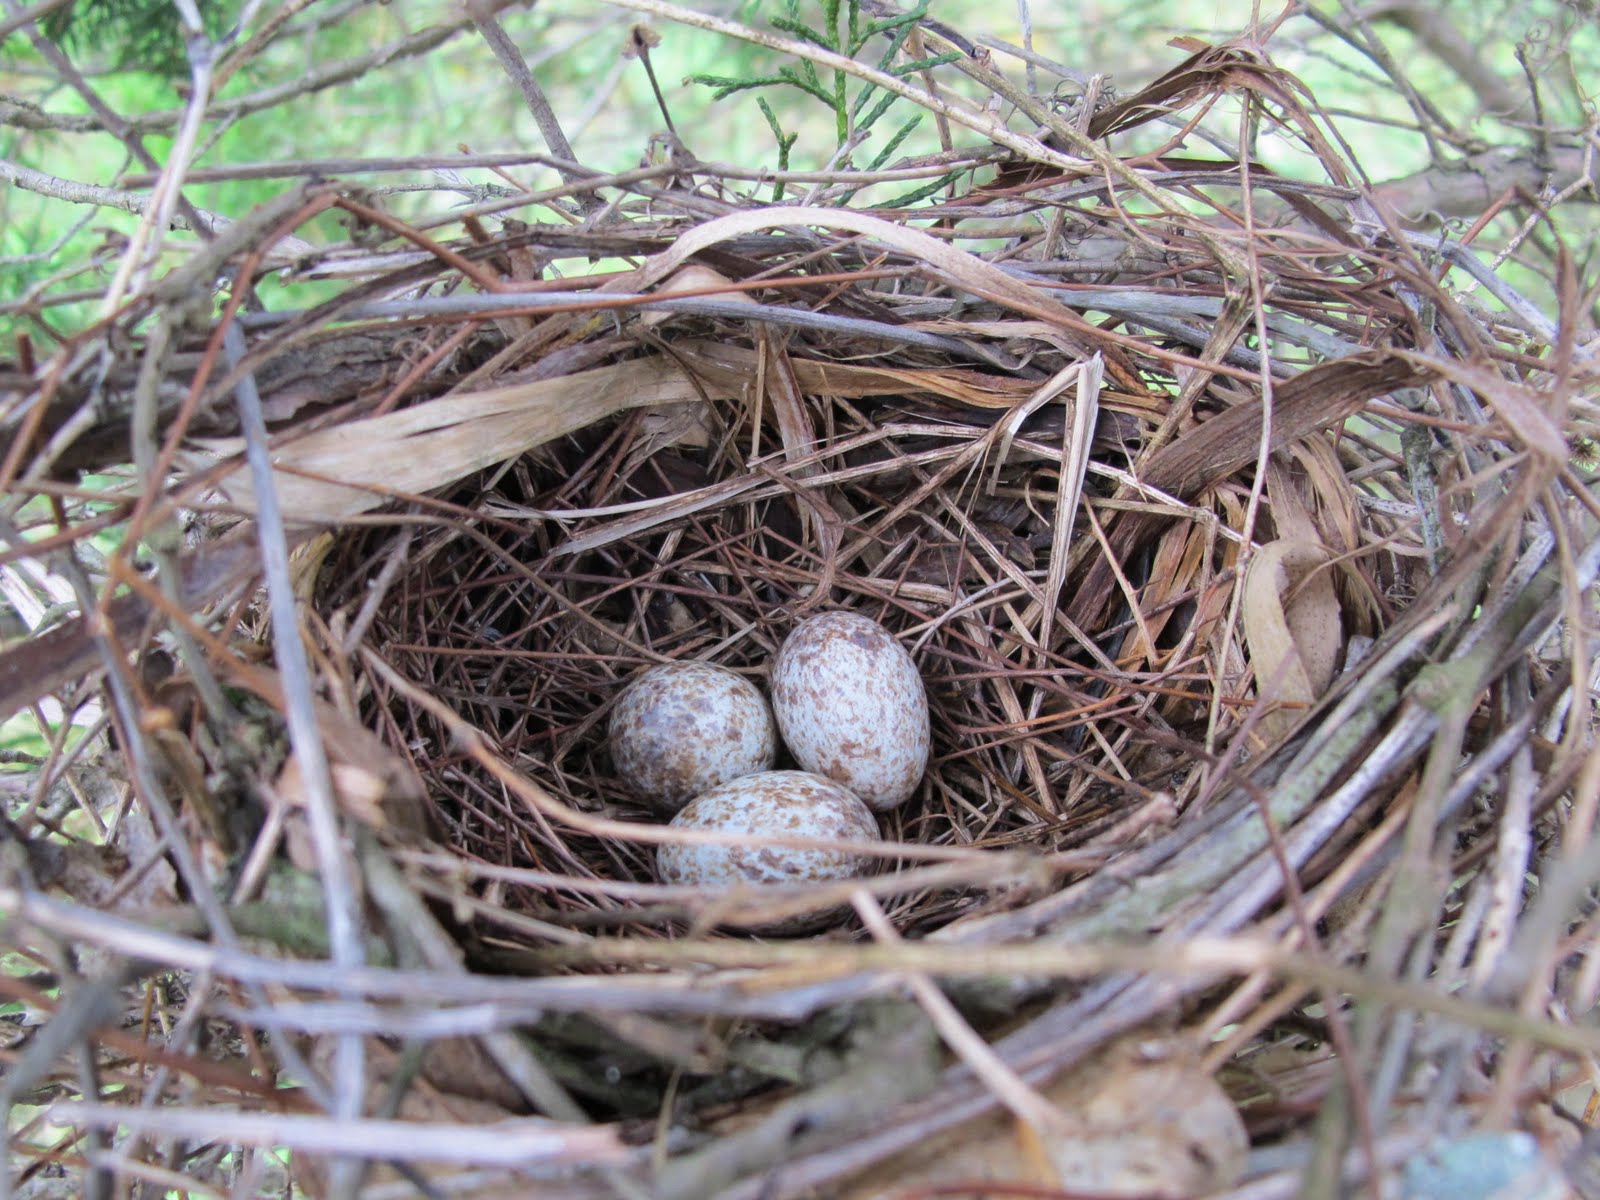 Their nests. Яйца птицы Кардинал.